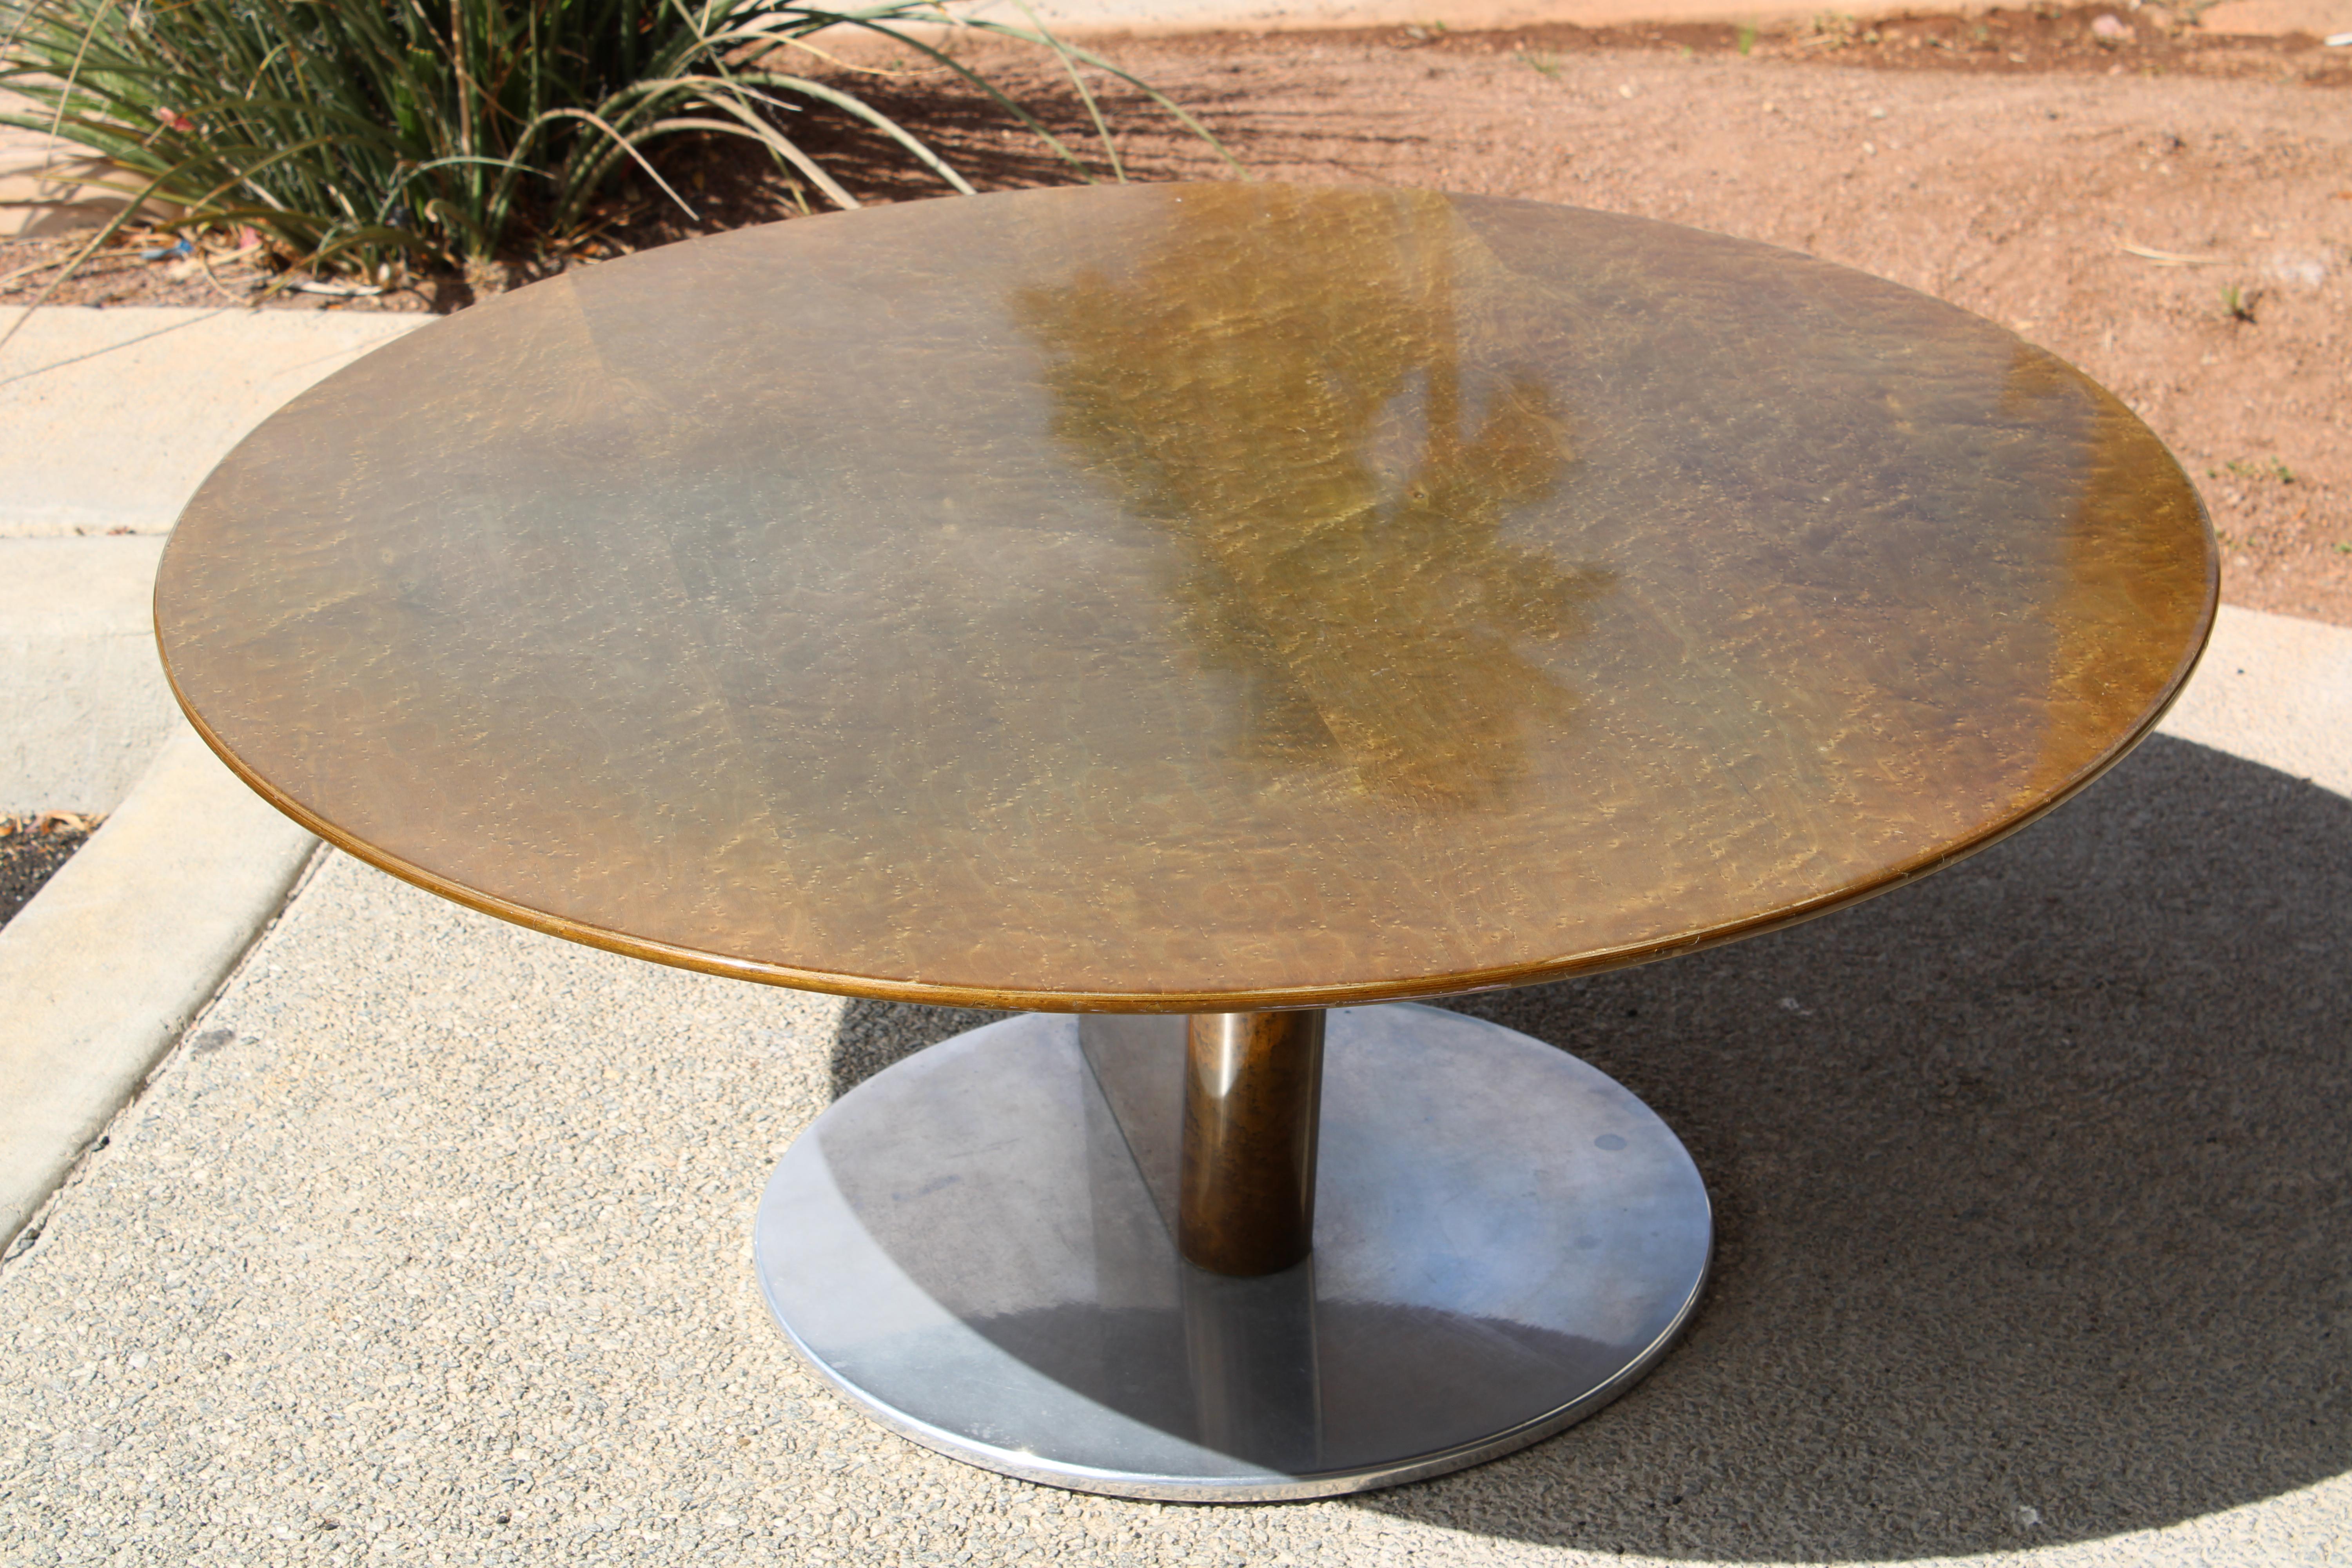 Italienischer Couchtisch aus lackiertem Vogelaugenahorn, entworfen von Saporiti in den 1980er Jahren. Der Tisch steht auf einem runden Aluminiumsockel. Wir haben die Tischplatte professionell aufpolieren lassen, um die Kratzer zu entfernen, die